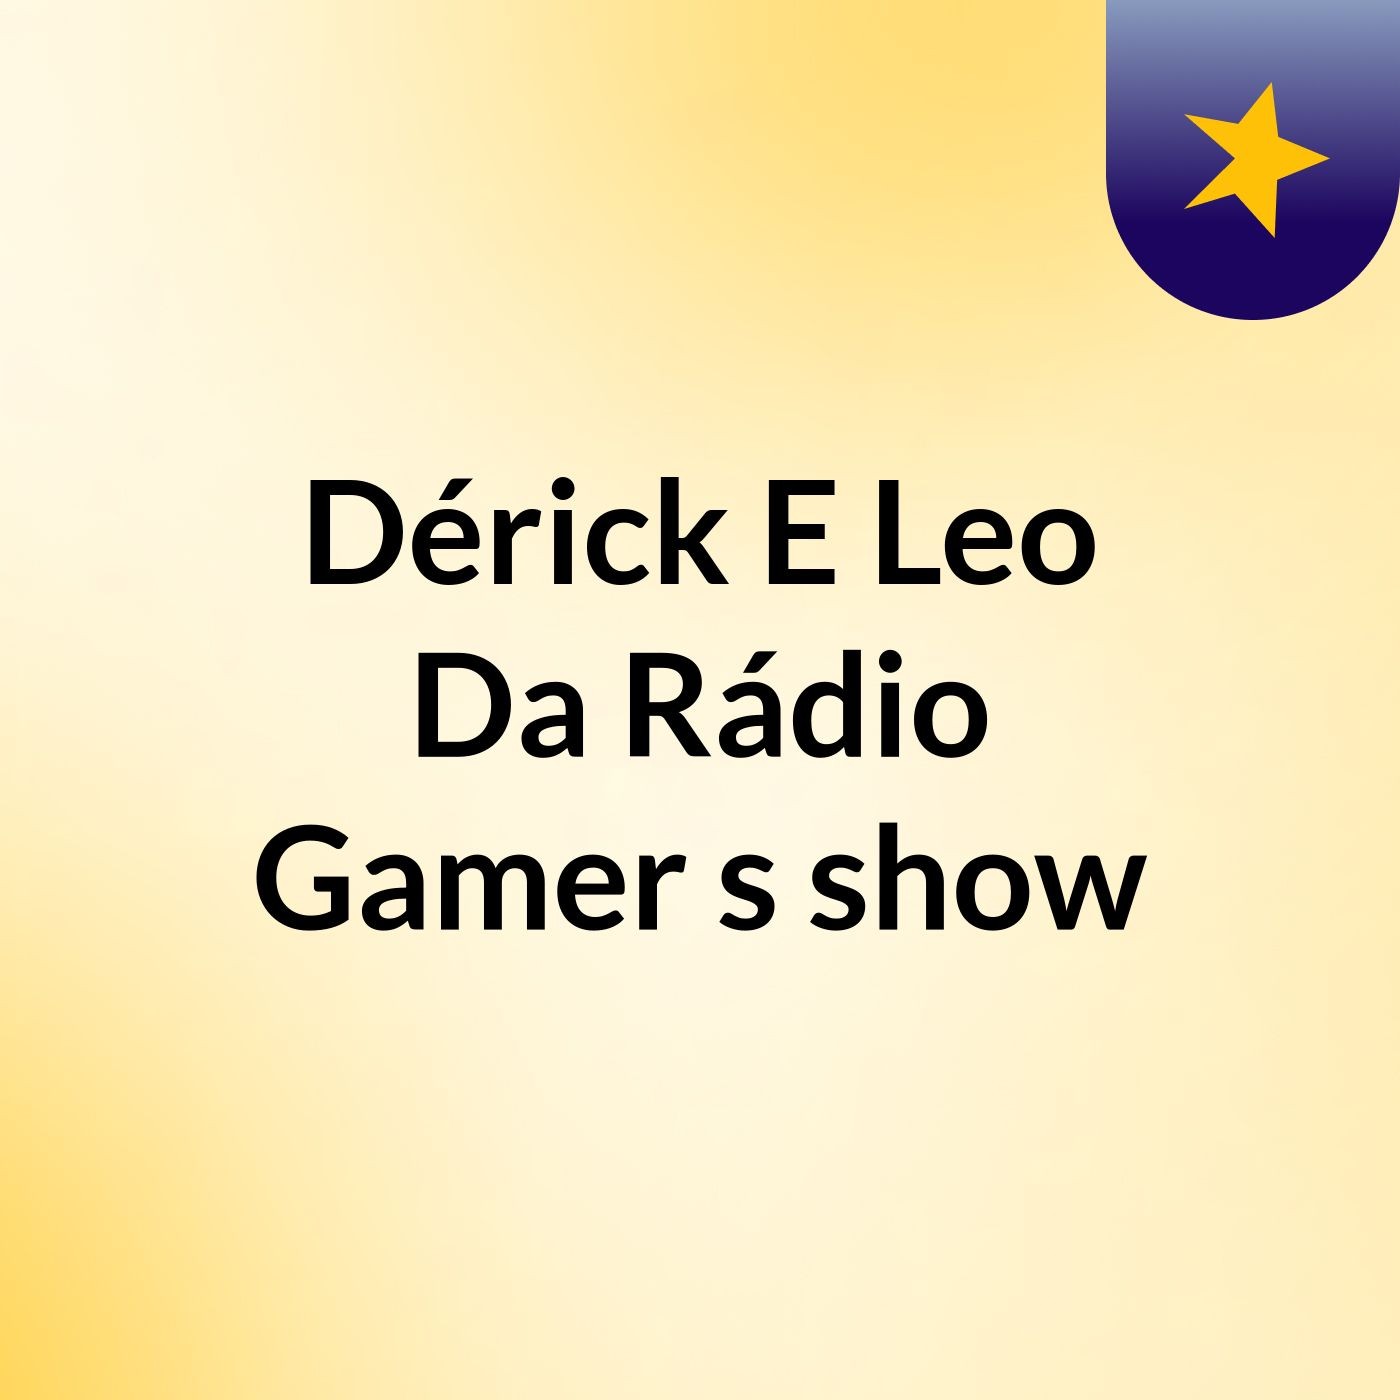 Dérick E Leo Da Rádio Gamer's show